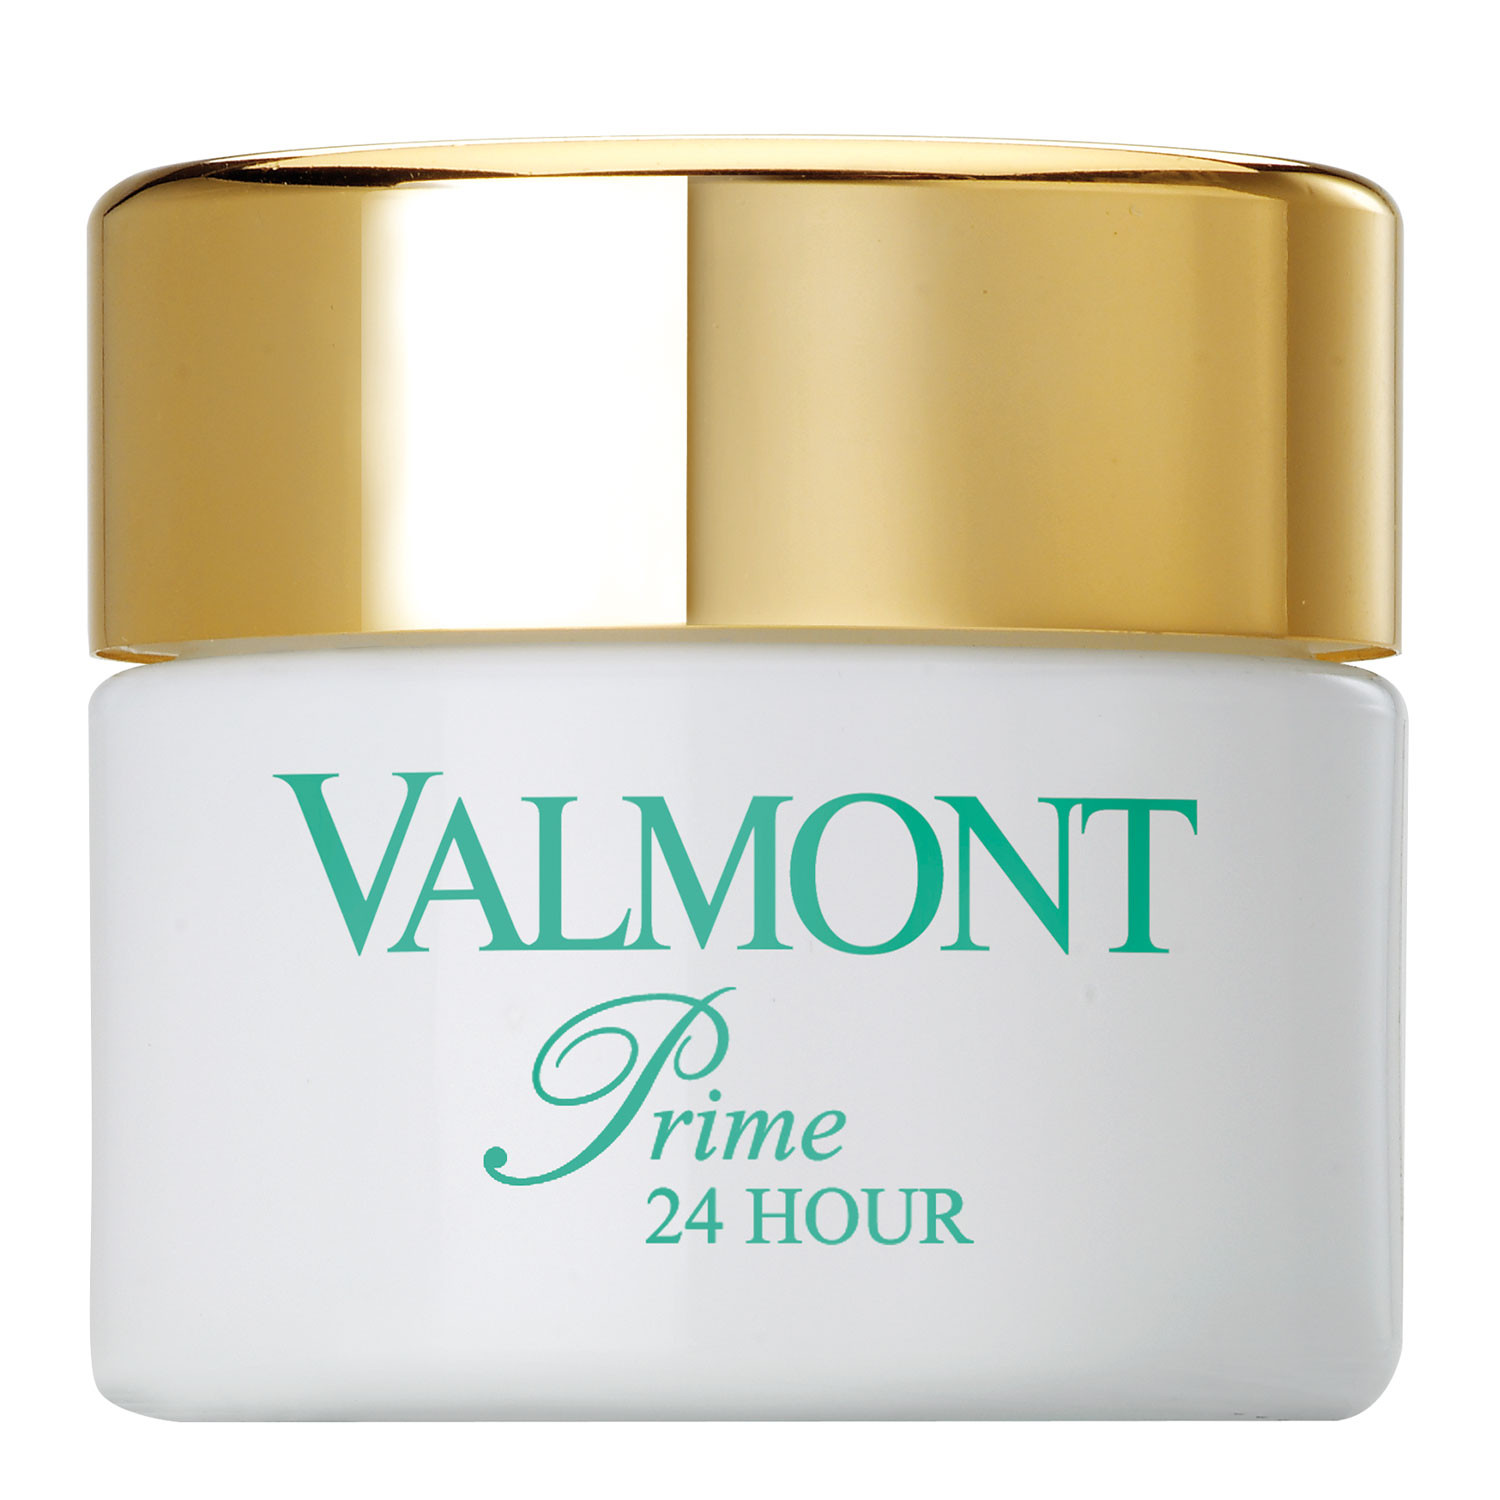 Valmont Prime 24 Hour Клітинний базовий зволожуючий крем для шкіри обличчя